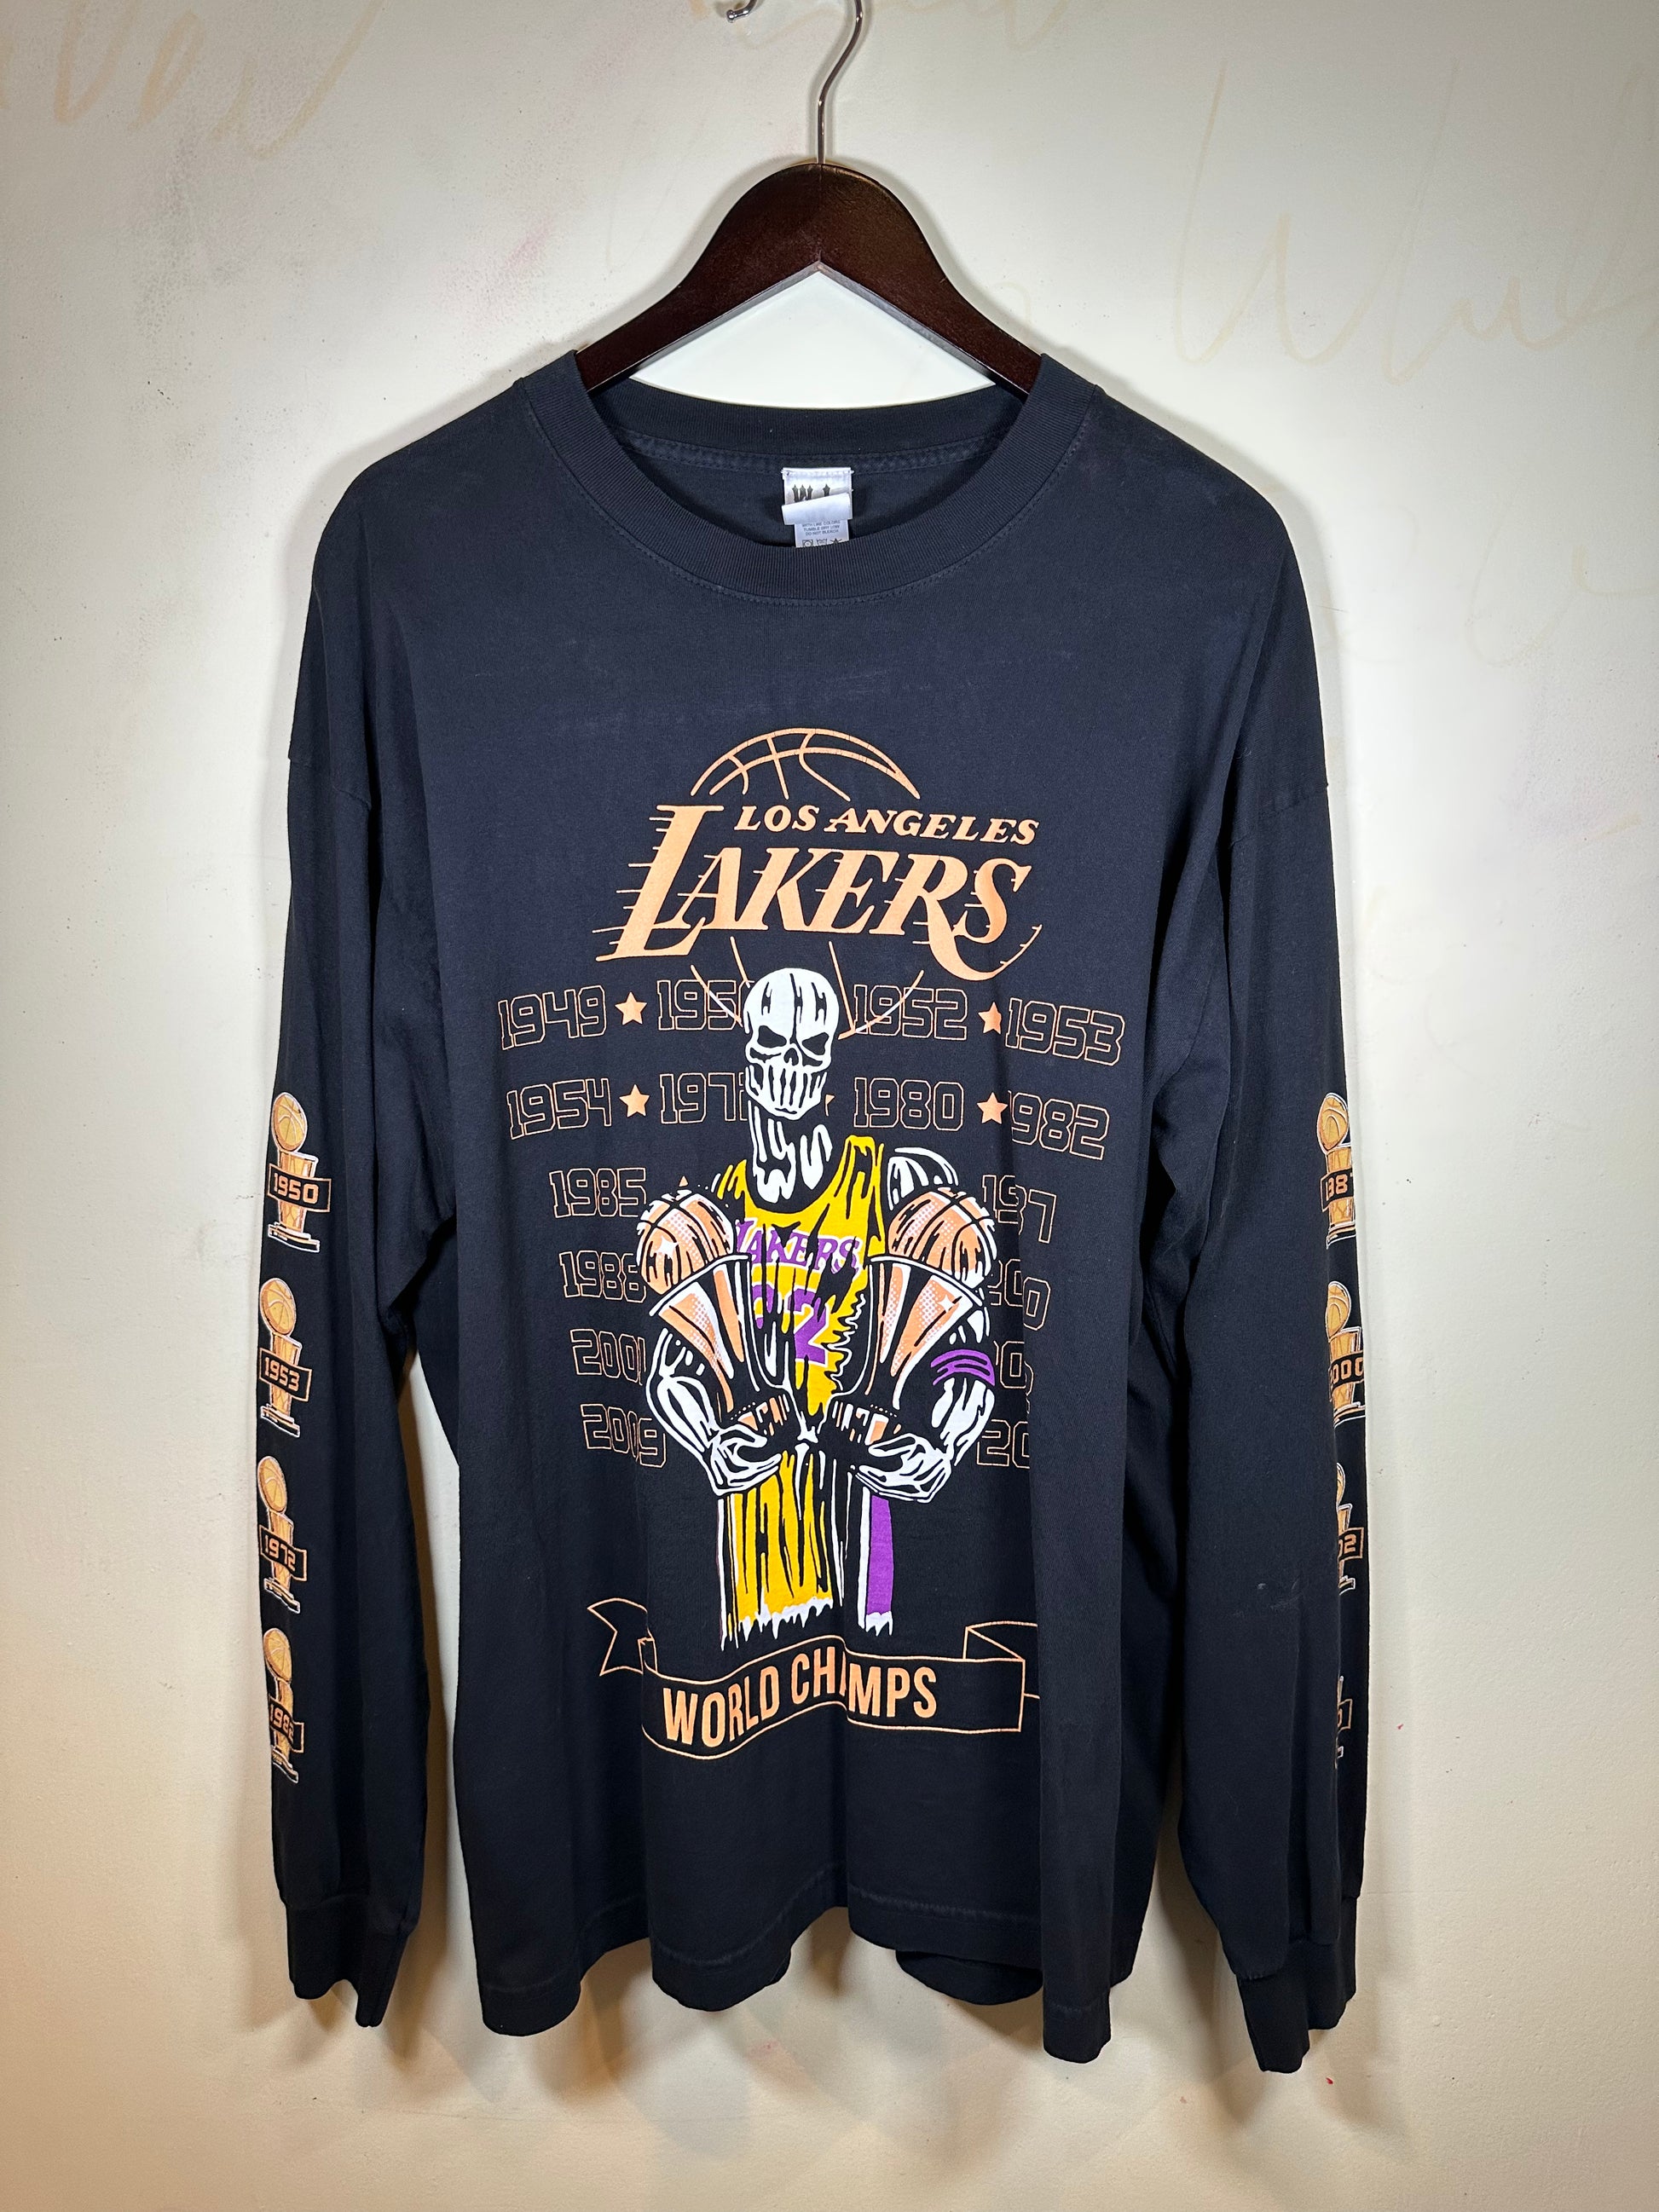 Warren Lotas x Lakers 2020 Championship LS Tee (XL) – Forsaken Gallery